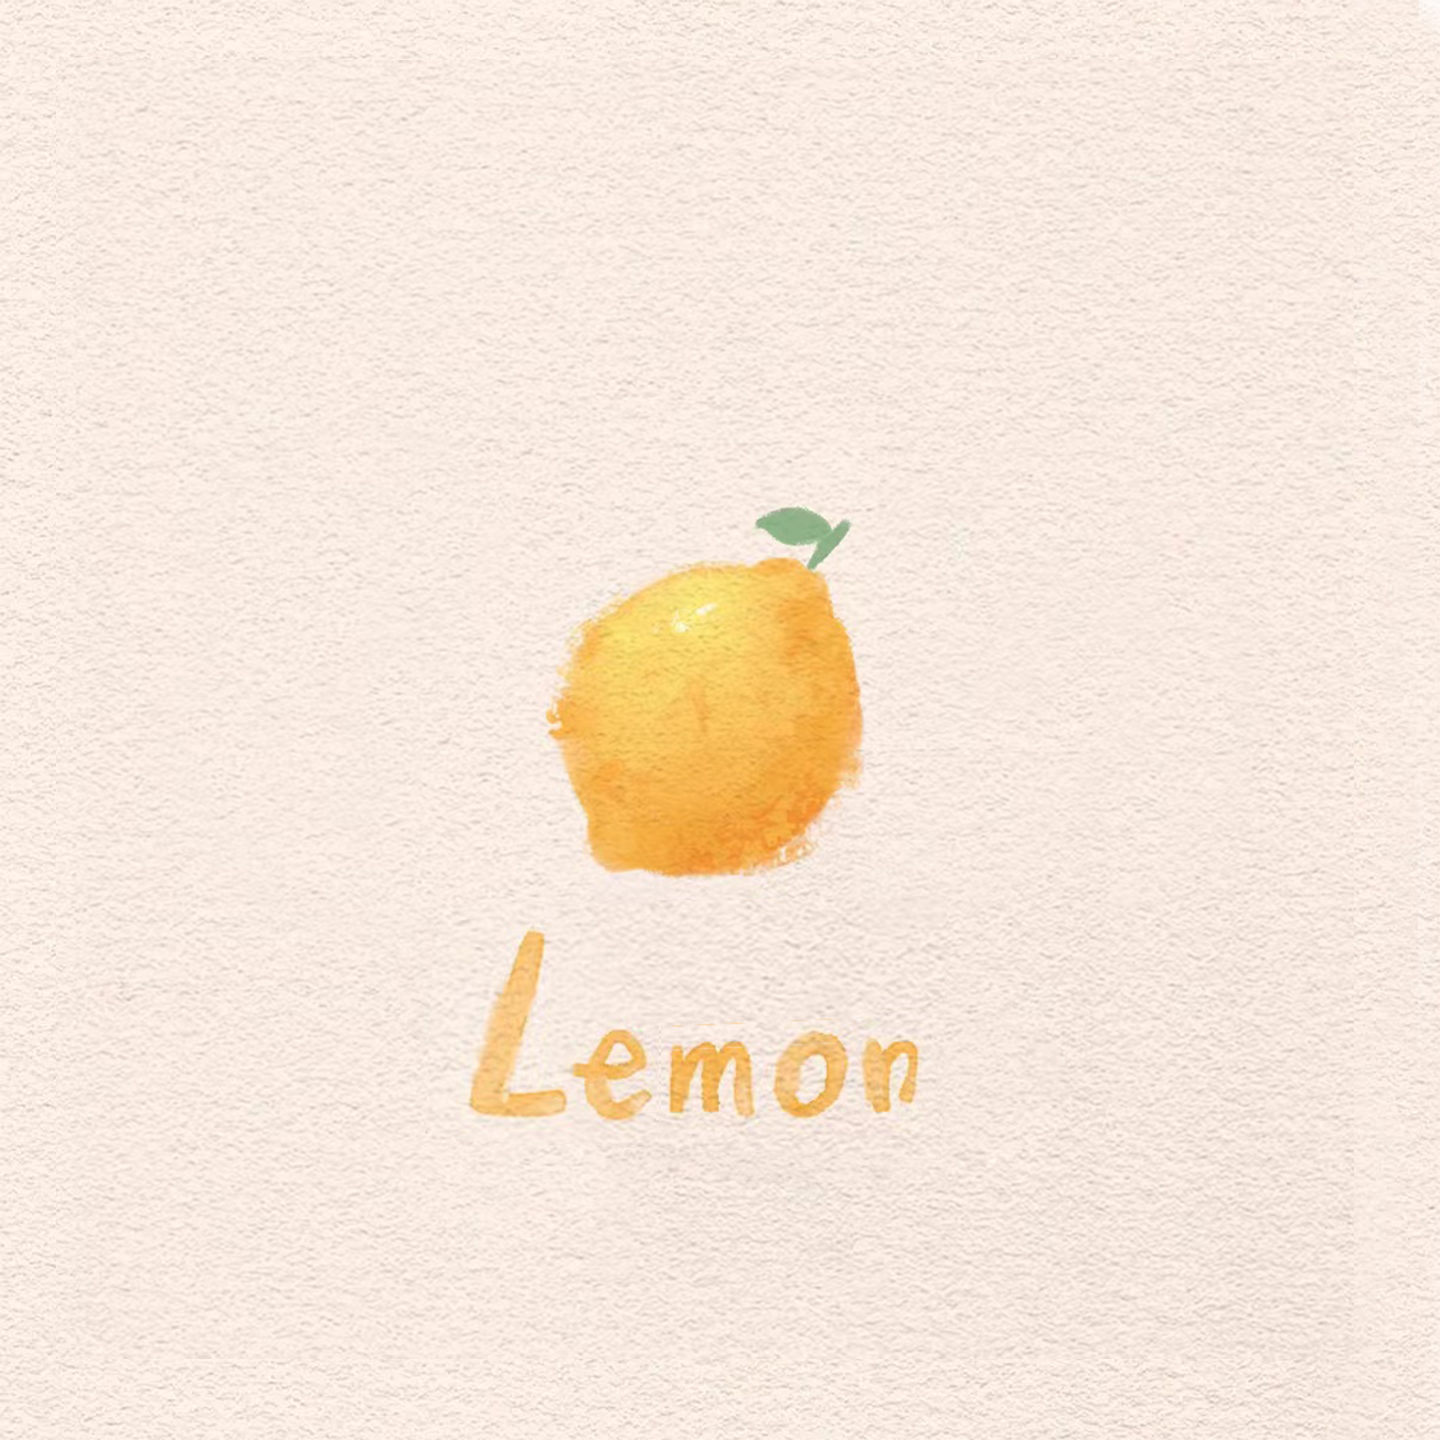 于行 - 柠檬物语